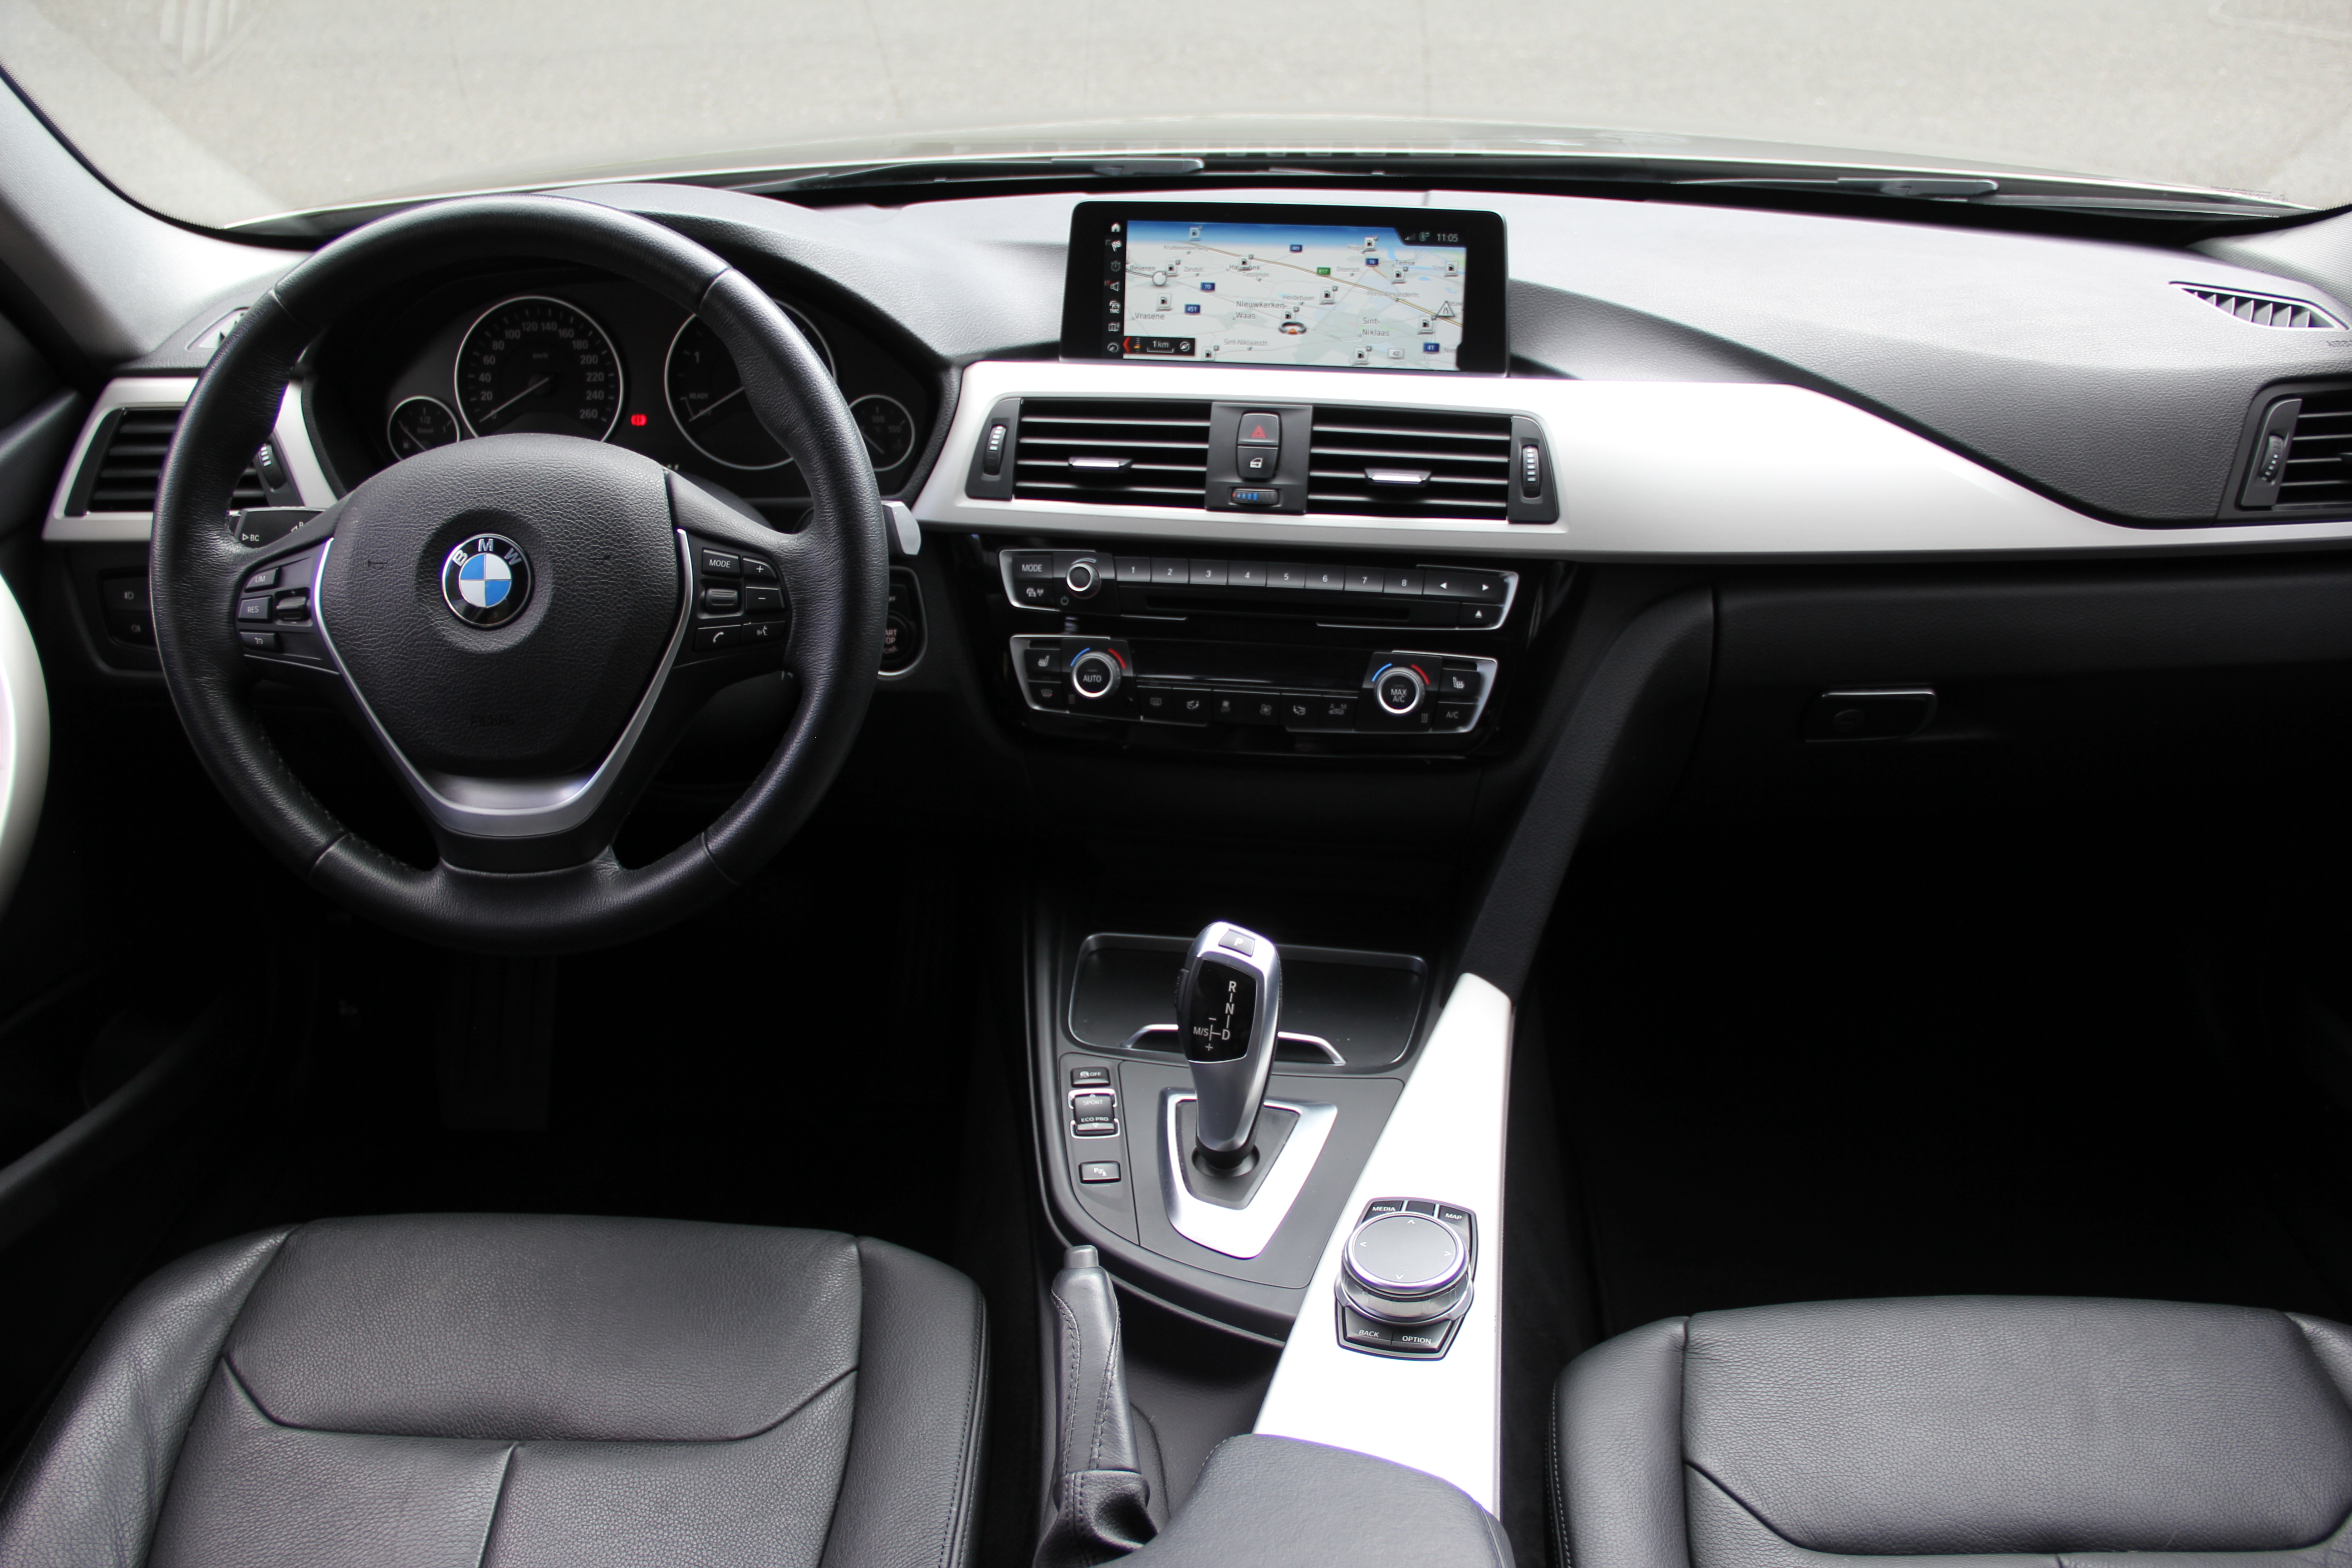 BMW 320dA Touring